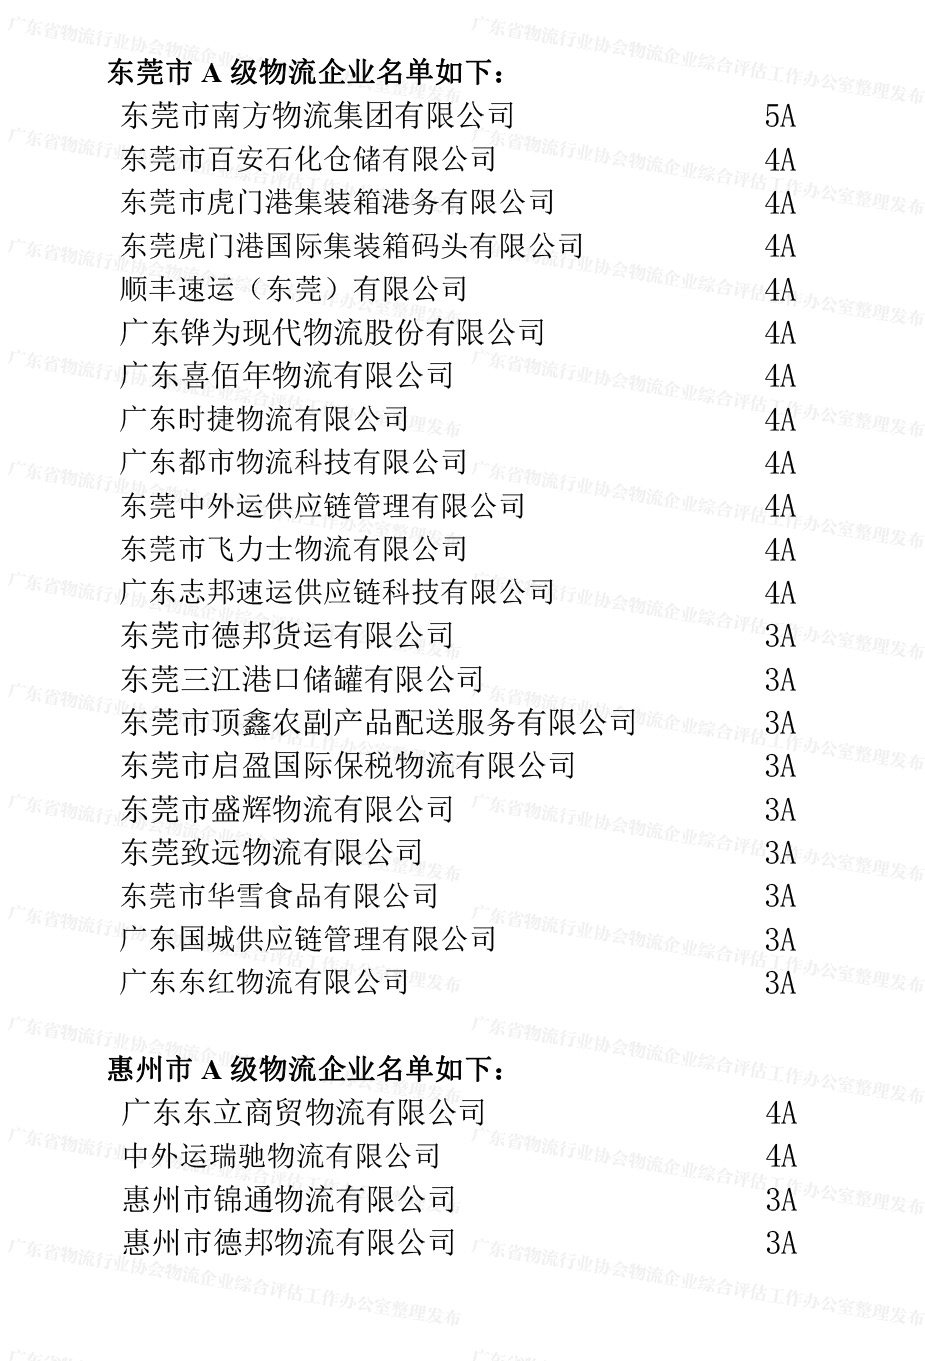 广东省A级物流企业名单（东莞、惠州地区）(1).jpg